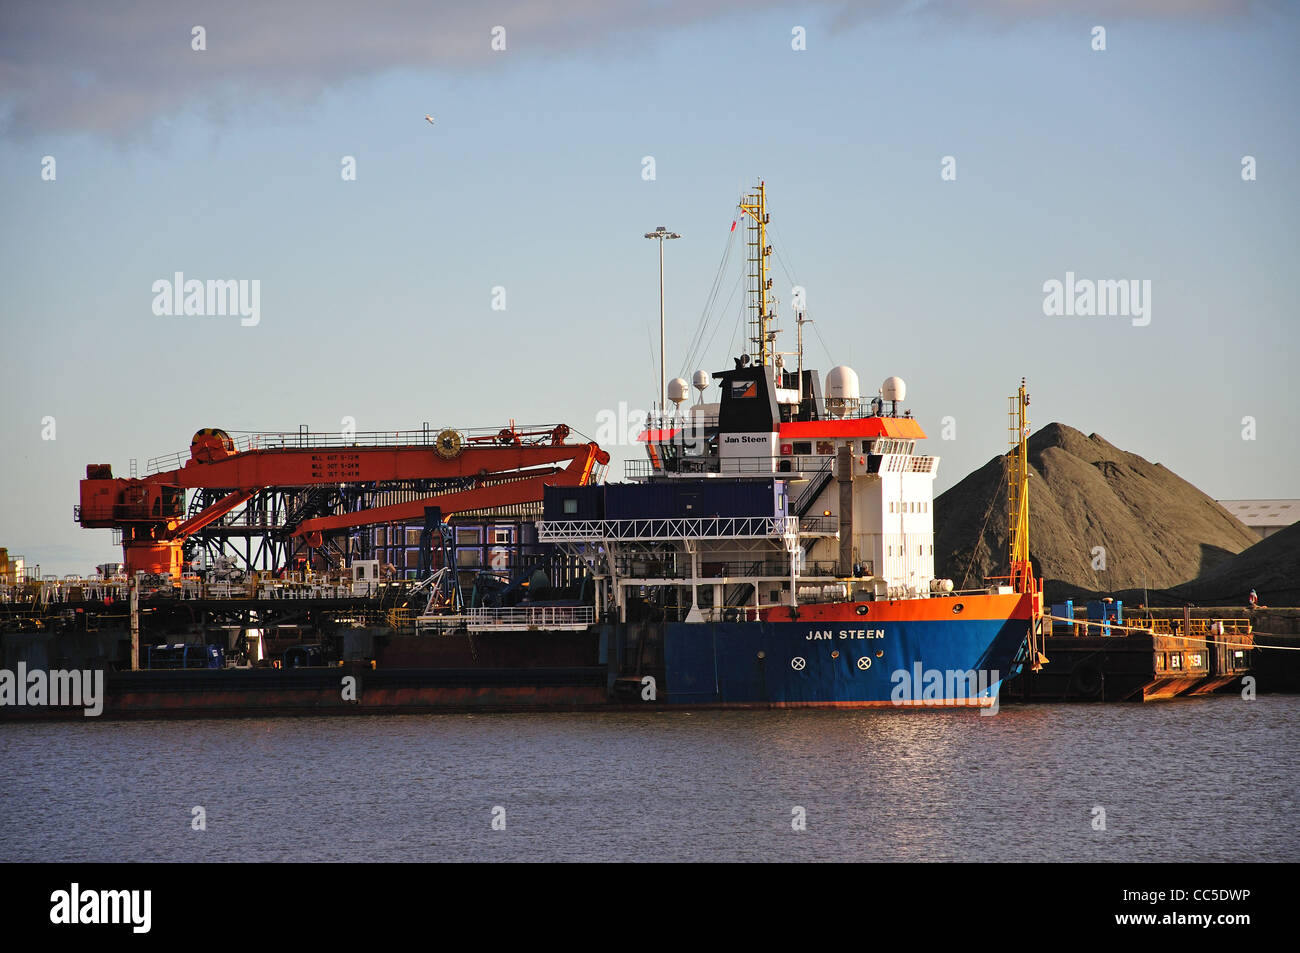 Remolcador "Jan Steen' barco atraca en Sunderland, Sunderland, Tyne y desgaste, England, Reino Unido Foto de stock